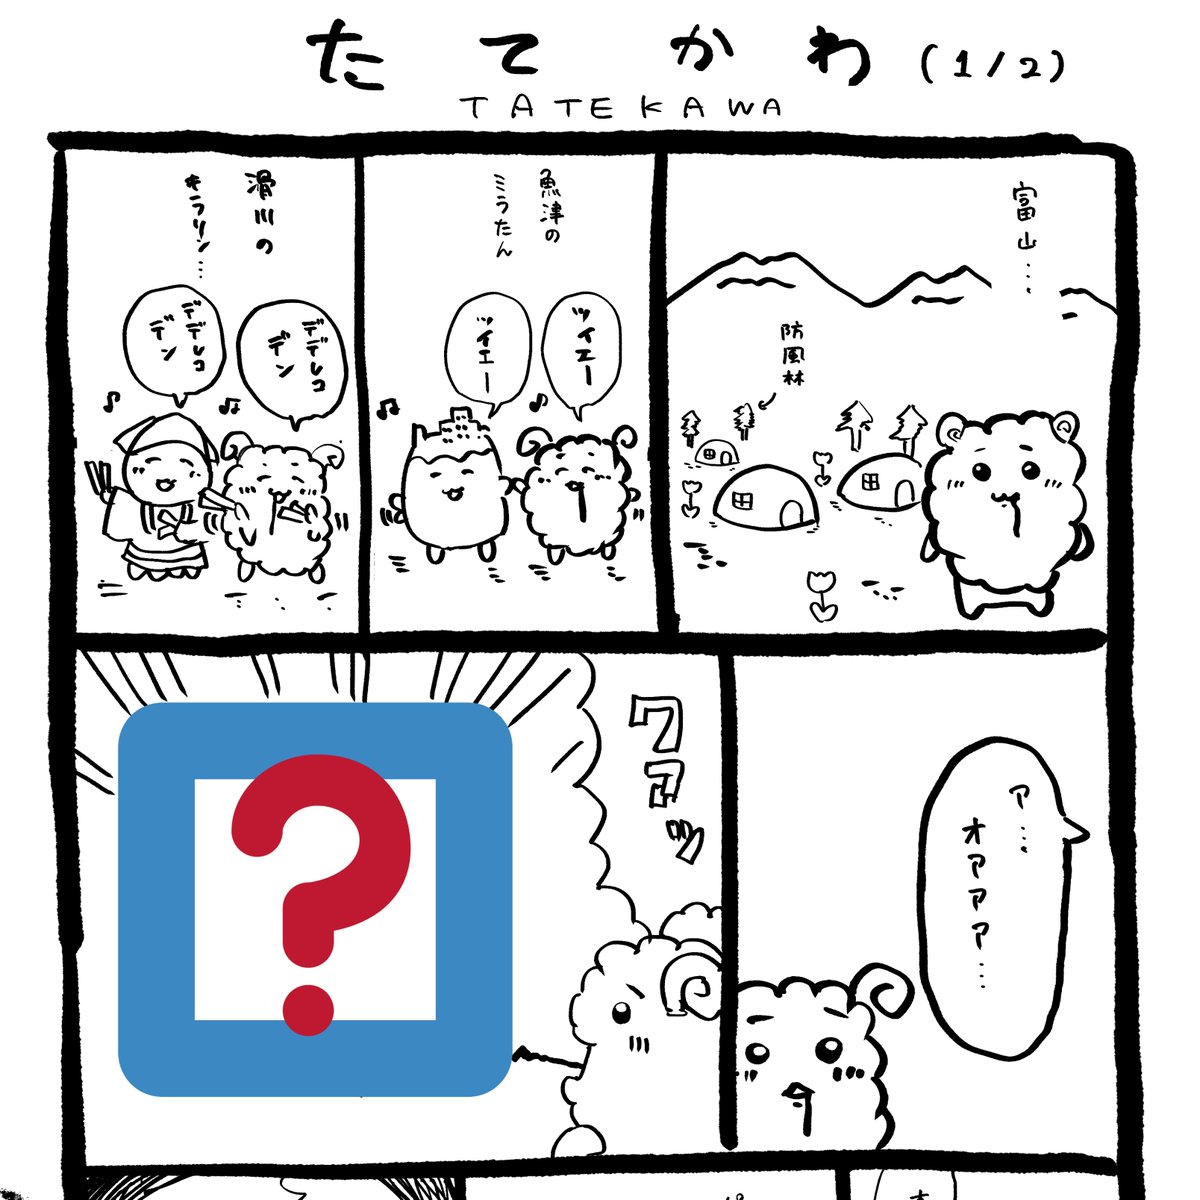 くろのさん @hitsuji96 のコミティア新刊に漫画を寄稿しています。富山のちいさくてかわいいキャラクターがたくさん出てくる前例のない全くオリジナル漫画です。 https://t.co/FKlNc10JM8 